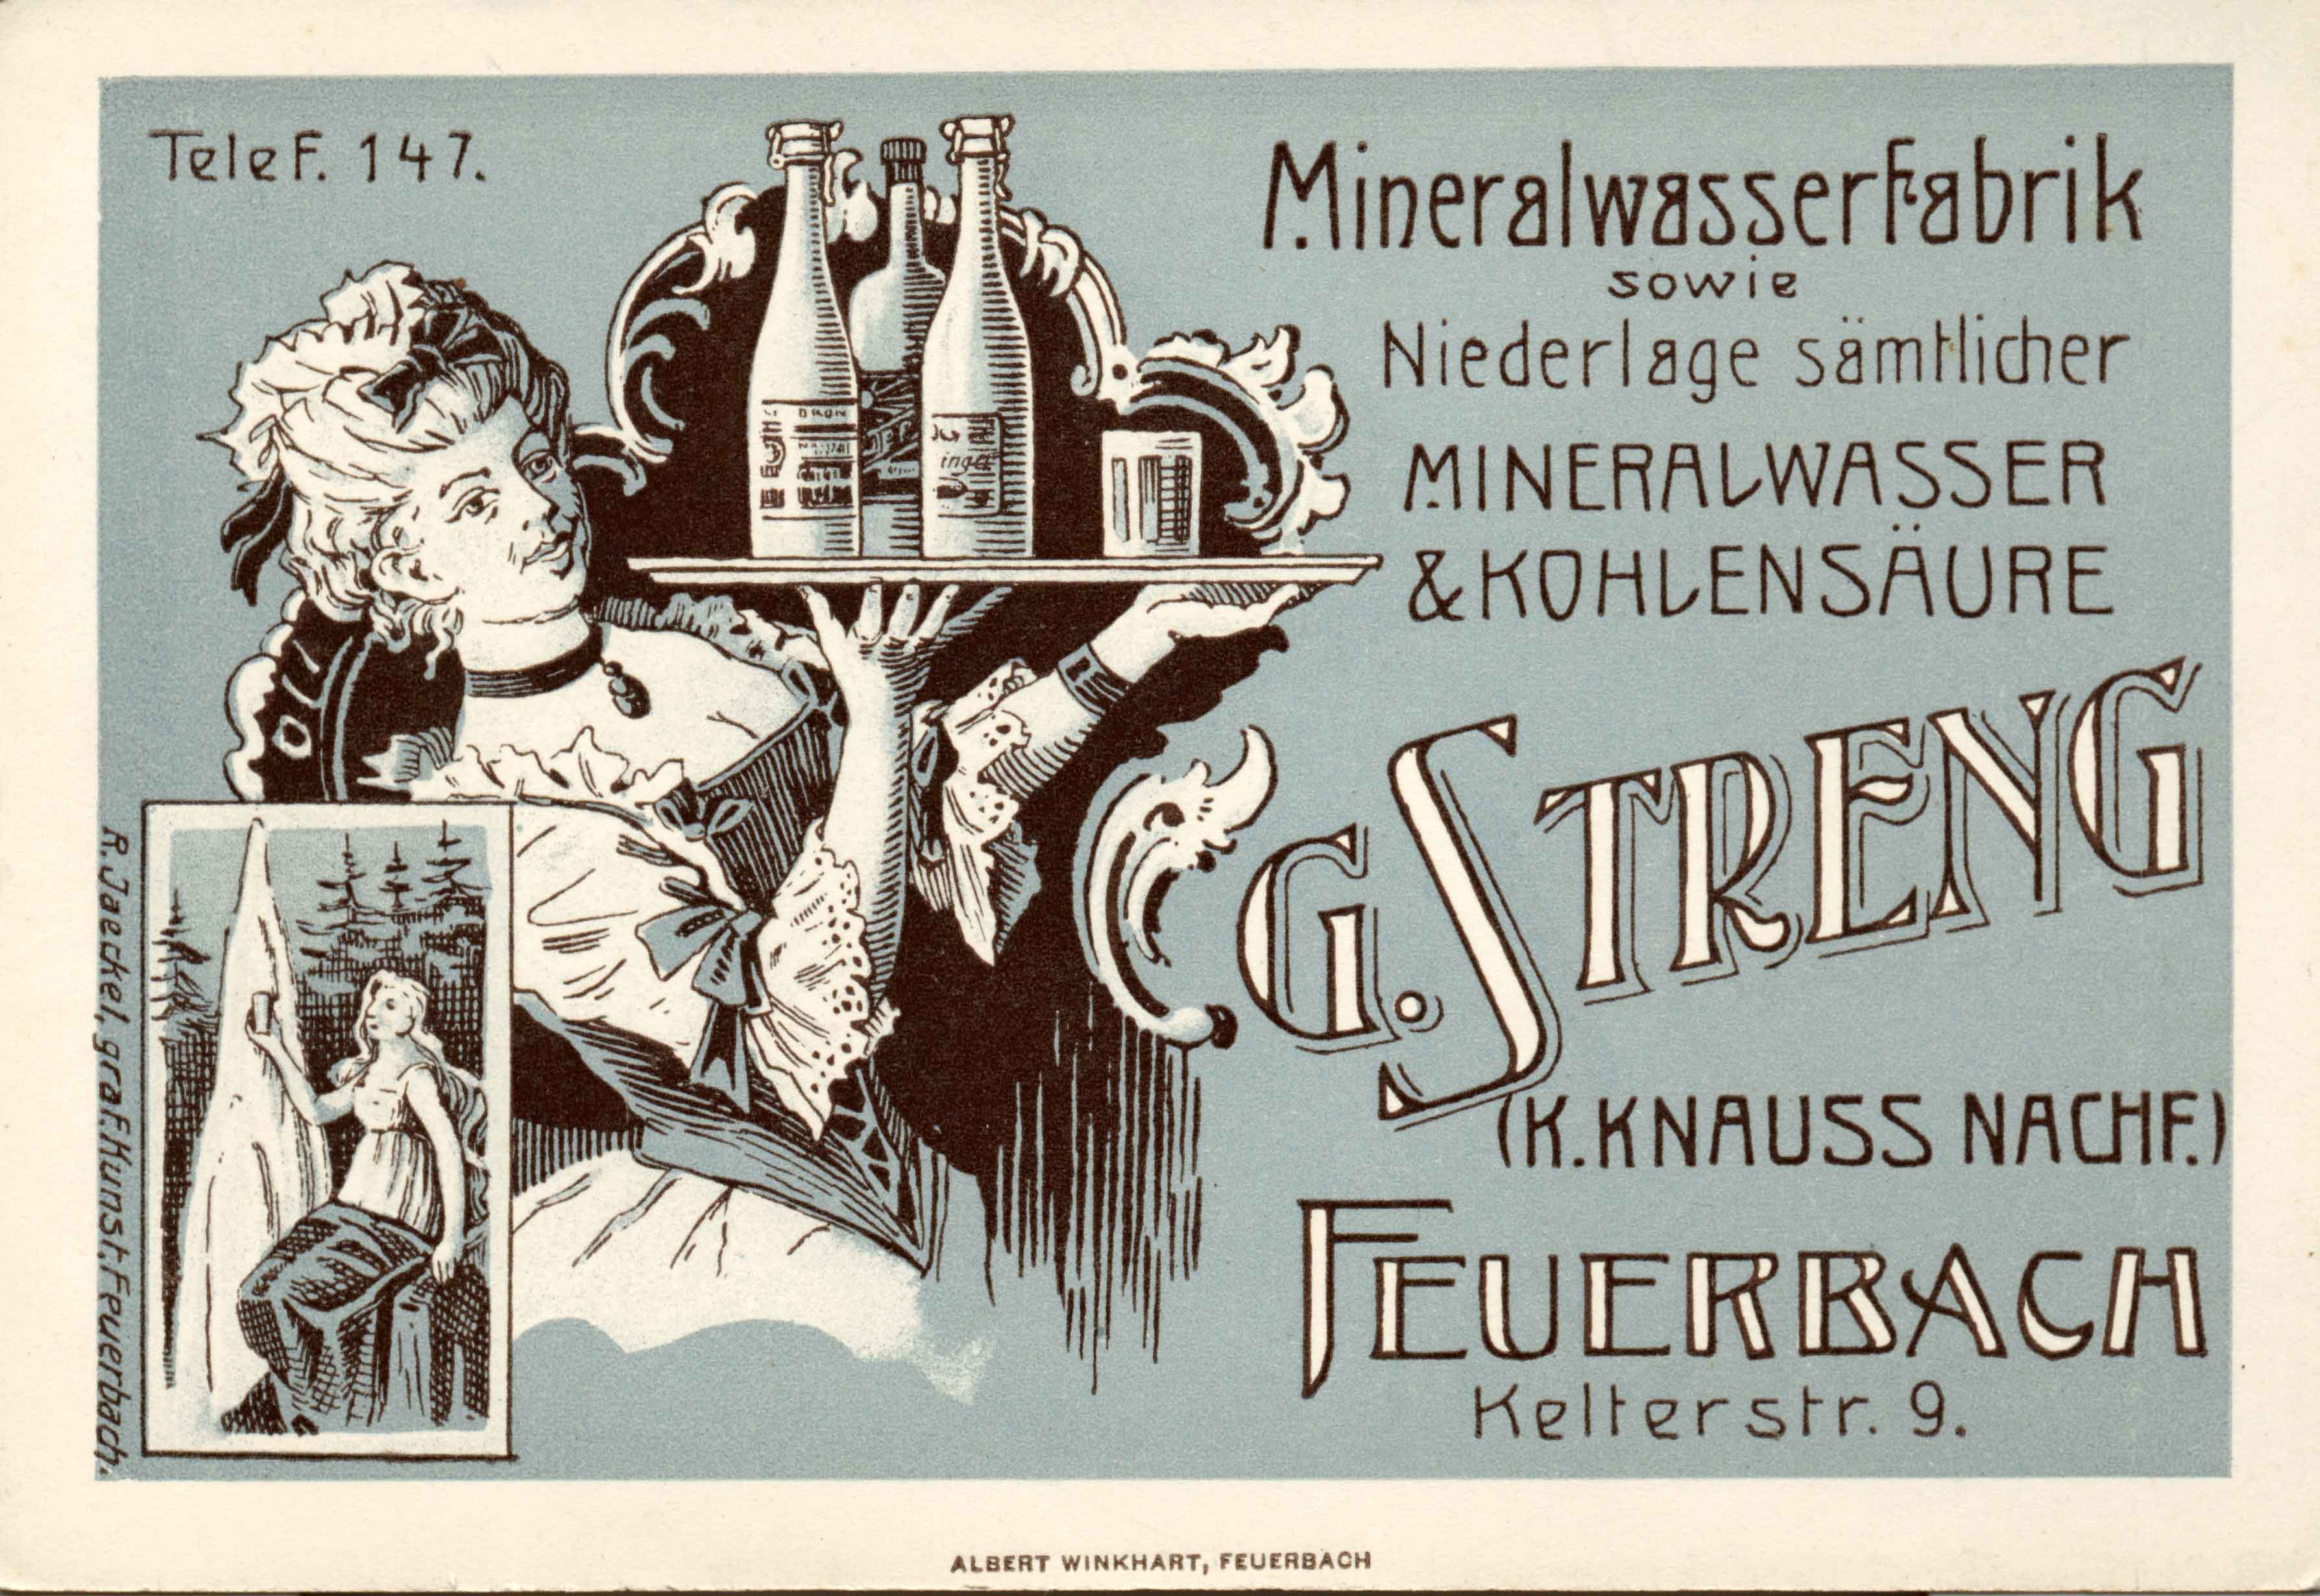 Getränke Streng - Postkarte von 1911 als Mineralwasser-Fabrik in Stuttgart-Feuerbach